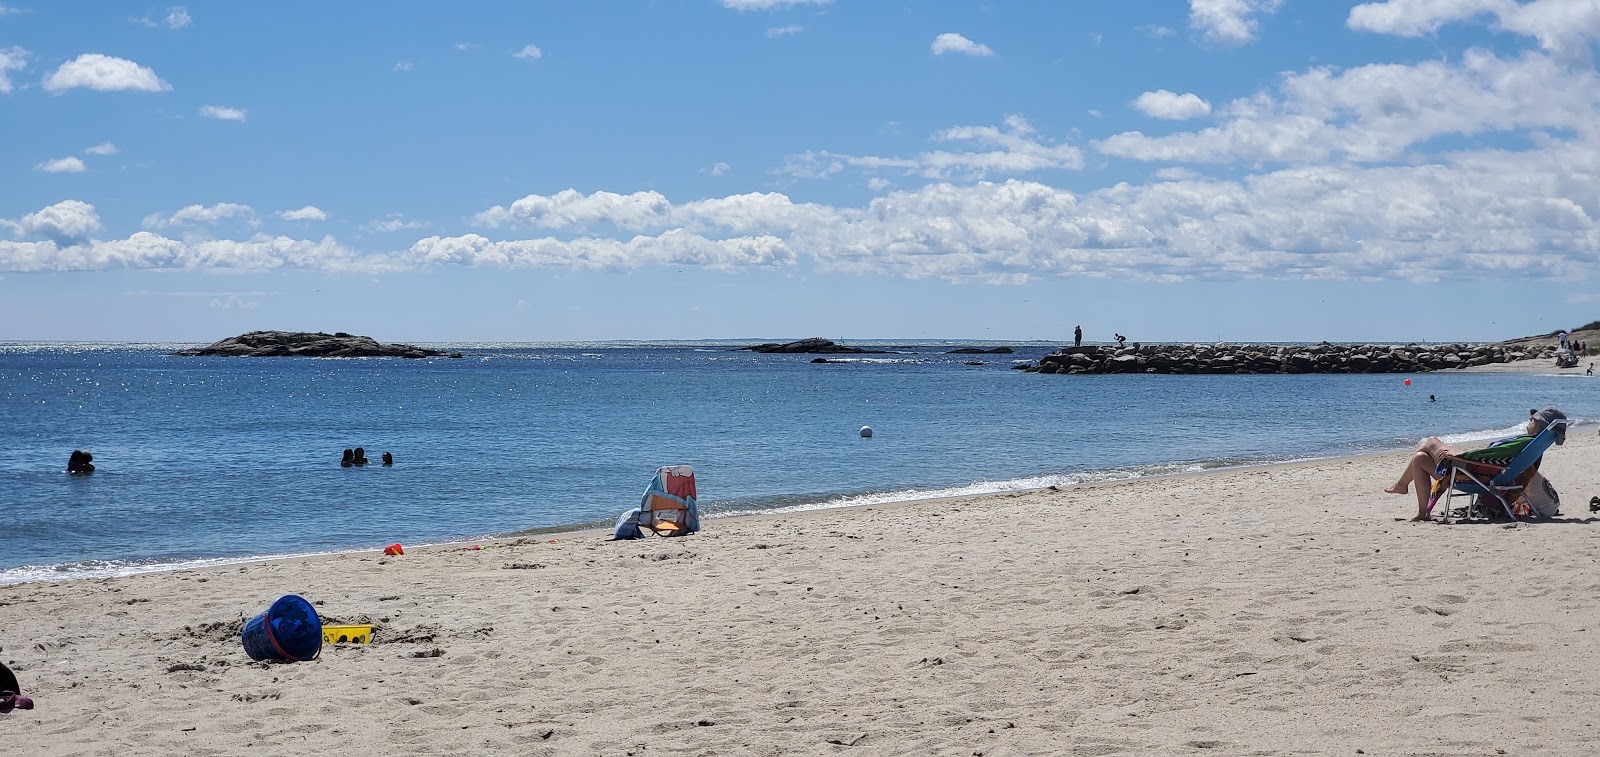 Fotografie cu Ocean Beach - locul popular printre cunoscătorii de relaxare